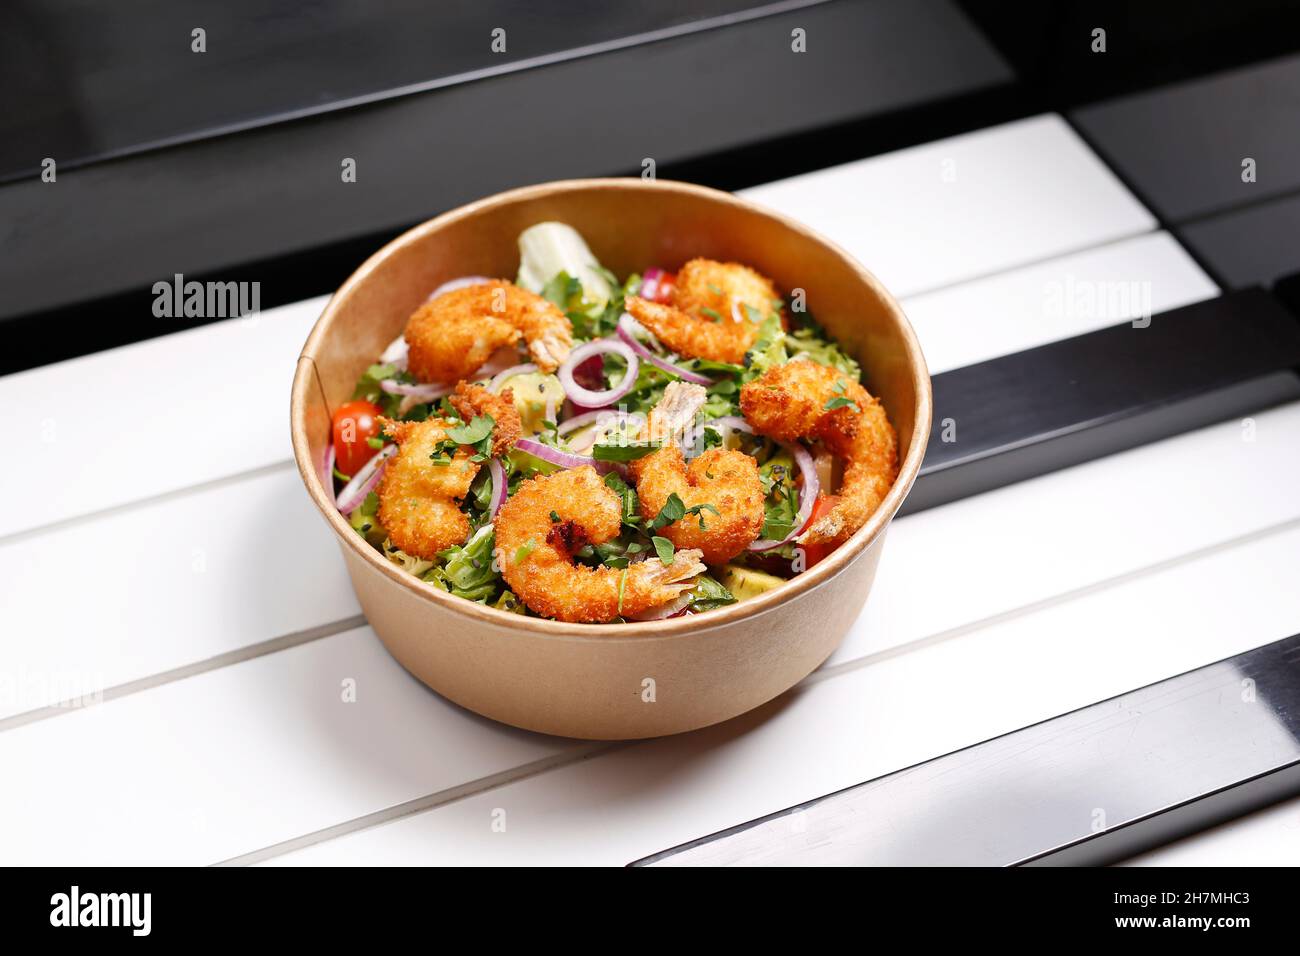 Crevettes frites sur une salade verte.À emporter, boîte de régime.Plat prêt-à-emporter appétissant servi dans une boîte jetable.Photographie culinaire.La nourriture. Banque D'Images